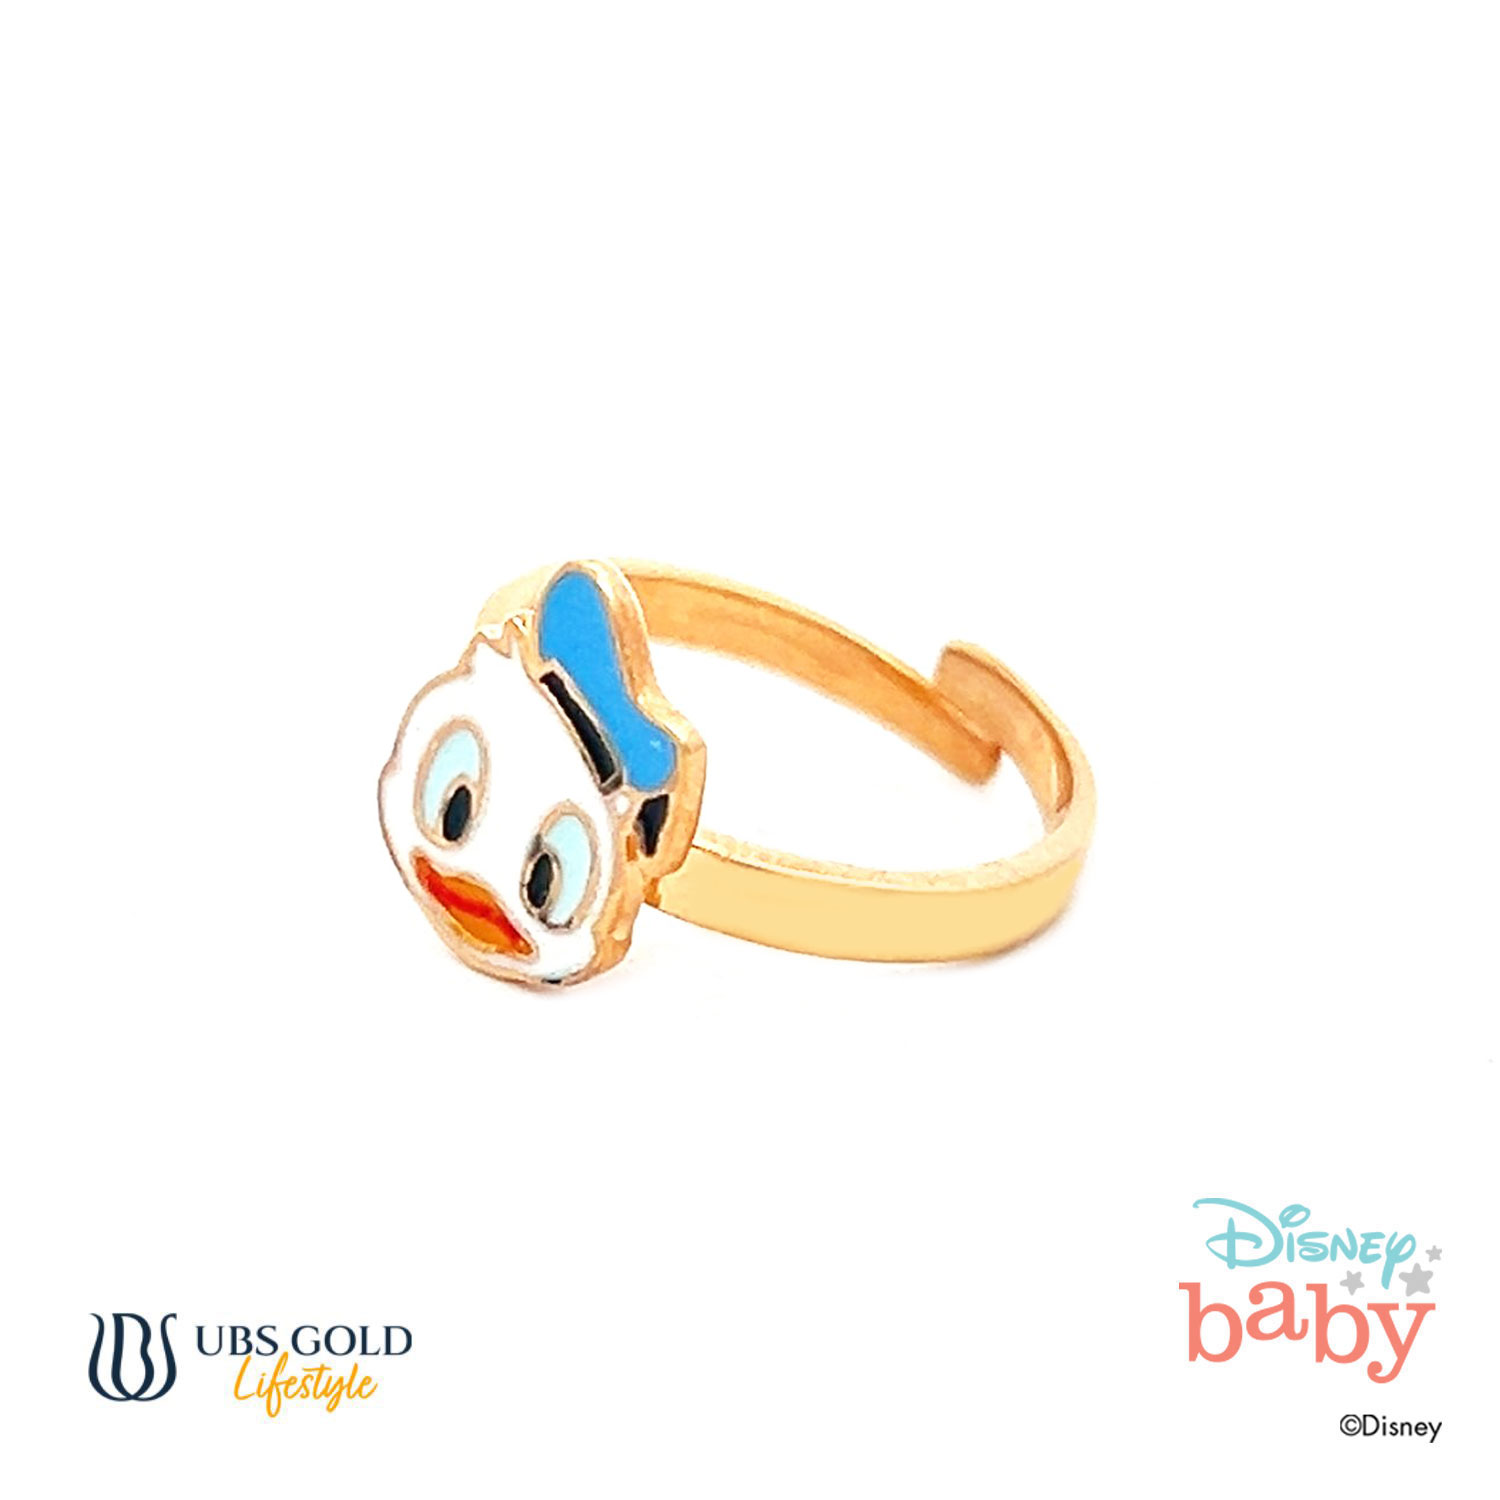 UBS Gold Cincin Emas Bayi Disney Donald Duck - Cny0009 - 17K